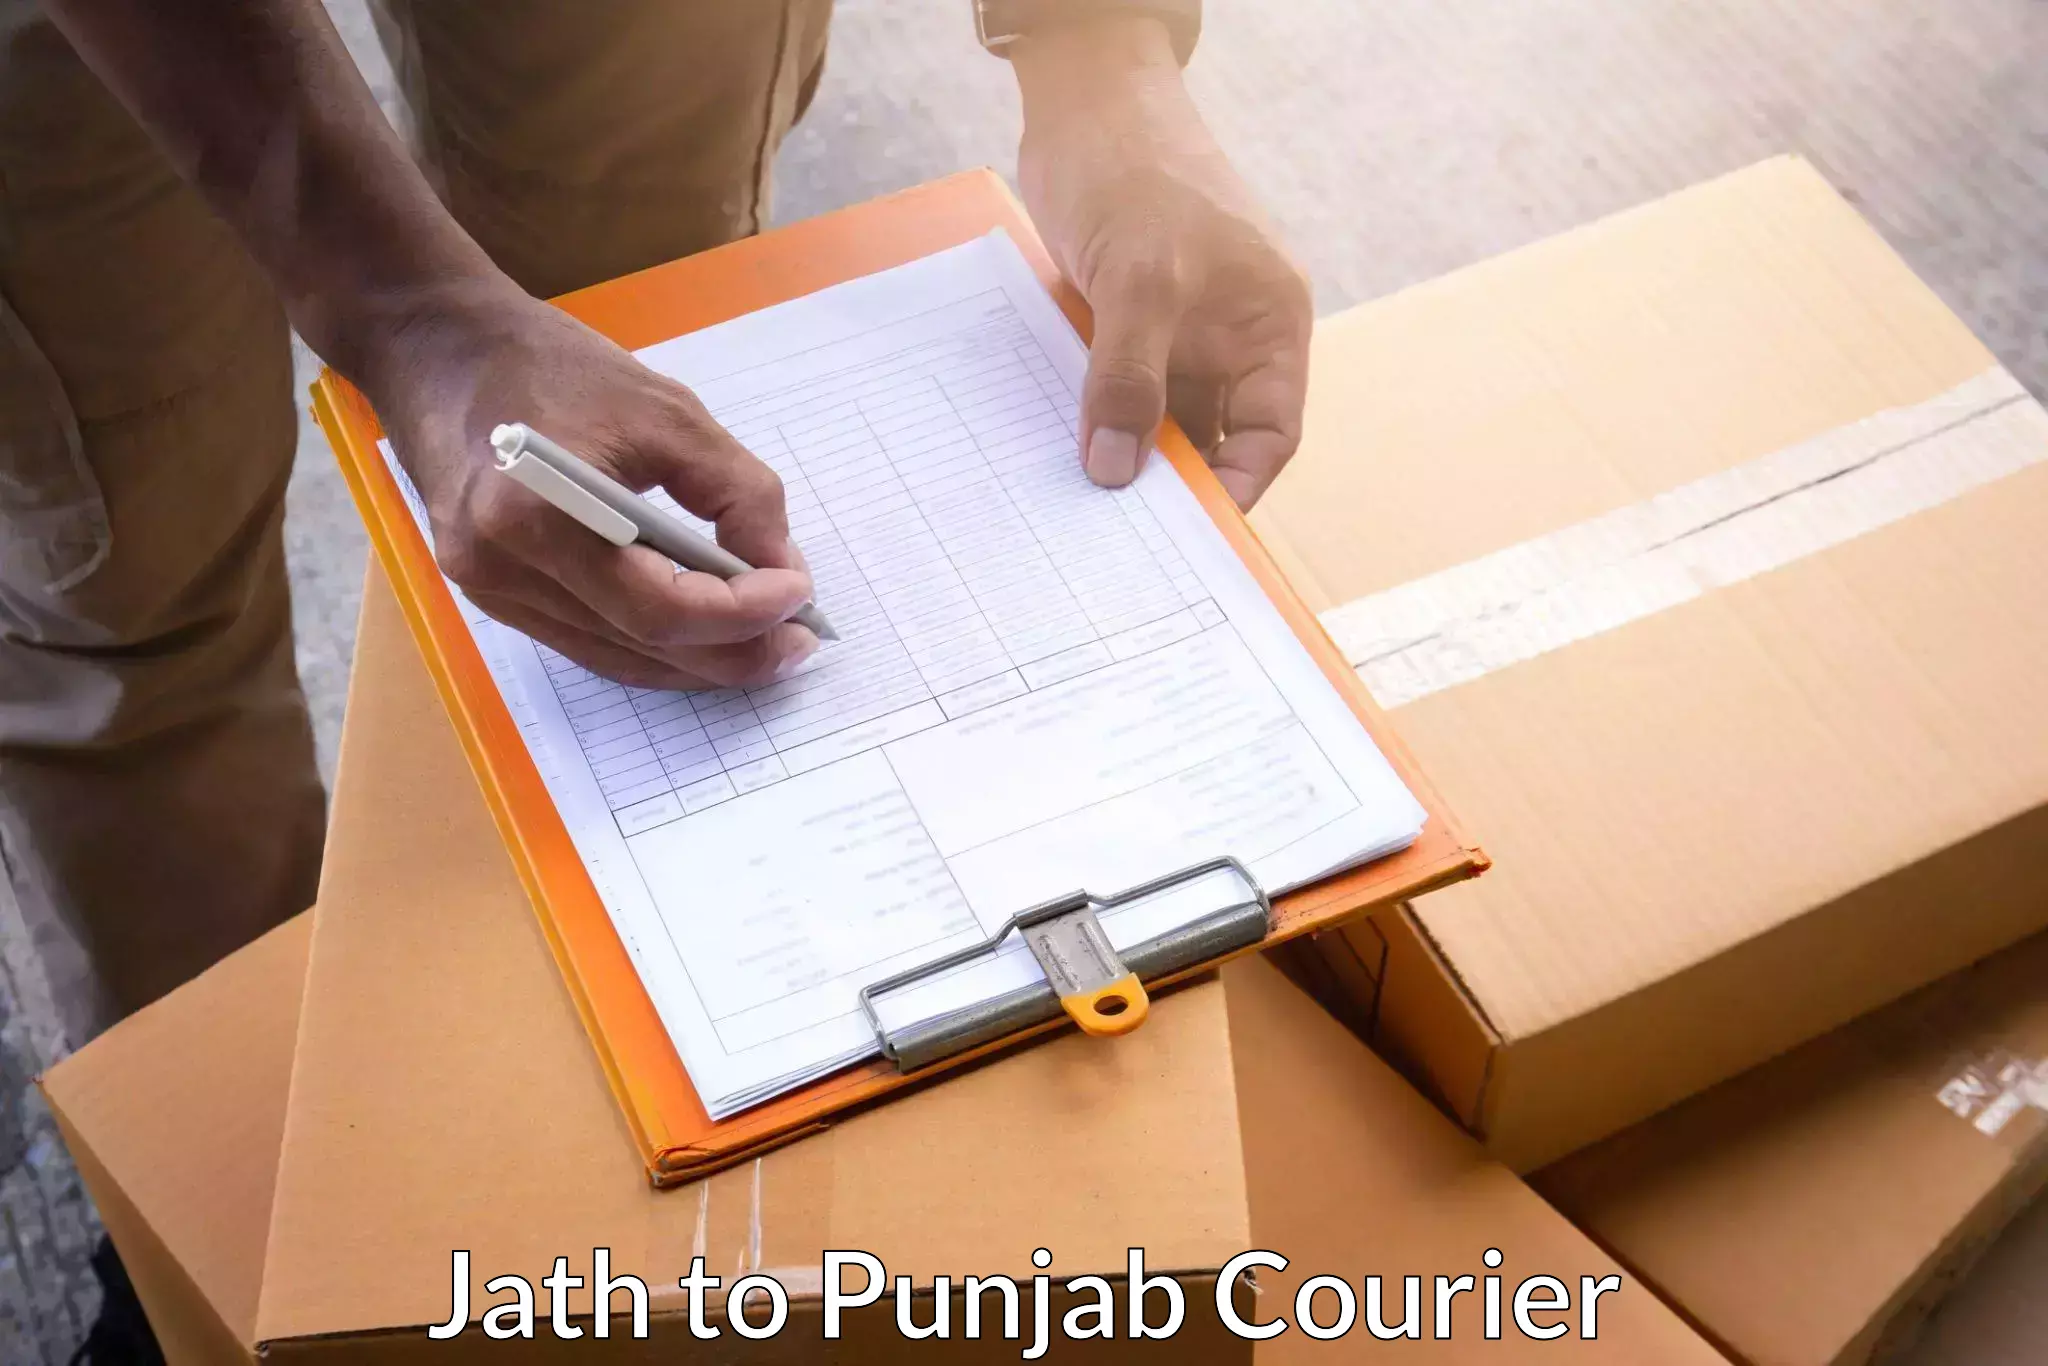 Courier service comparison Jath to Punjab